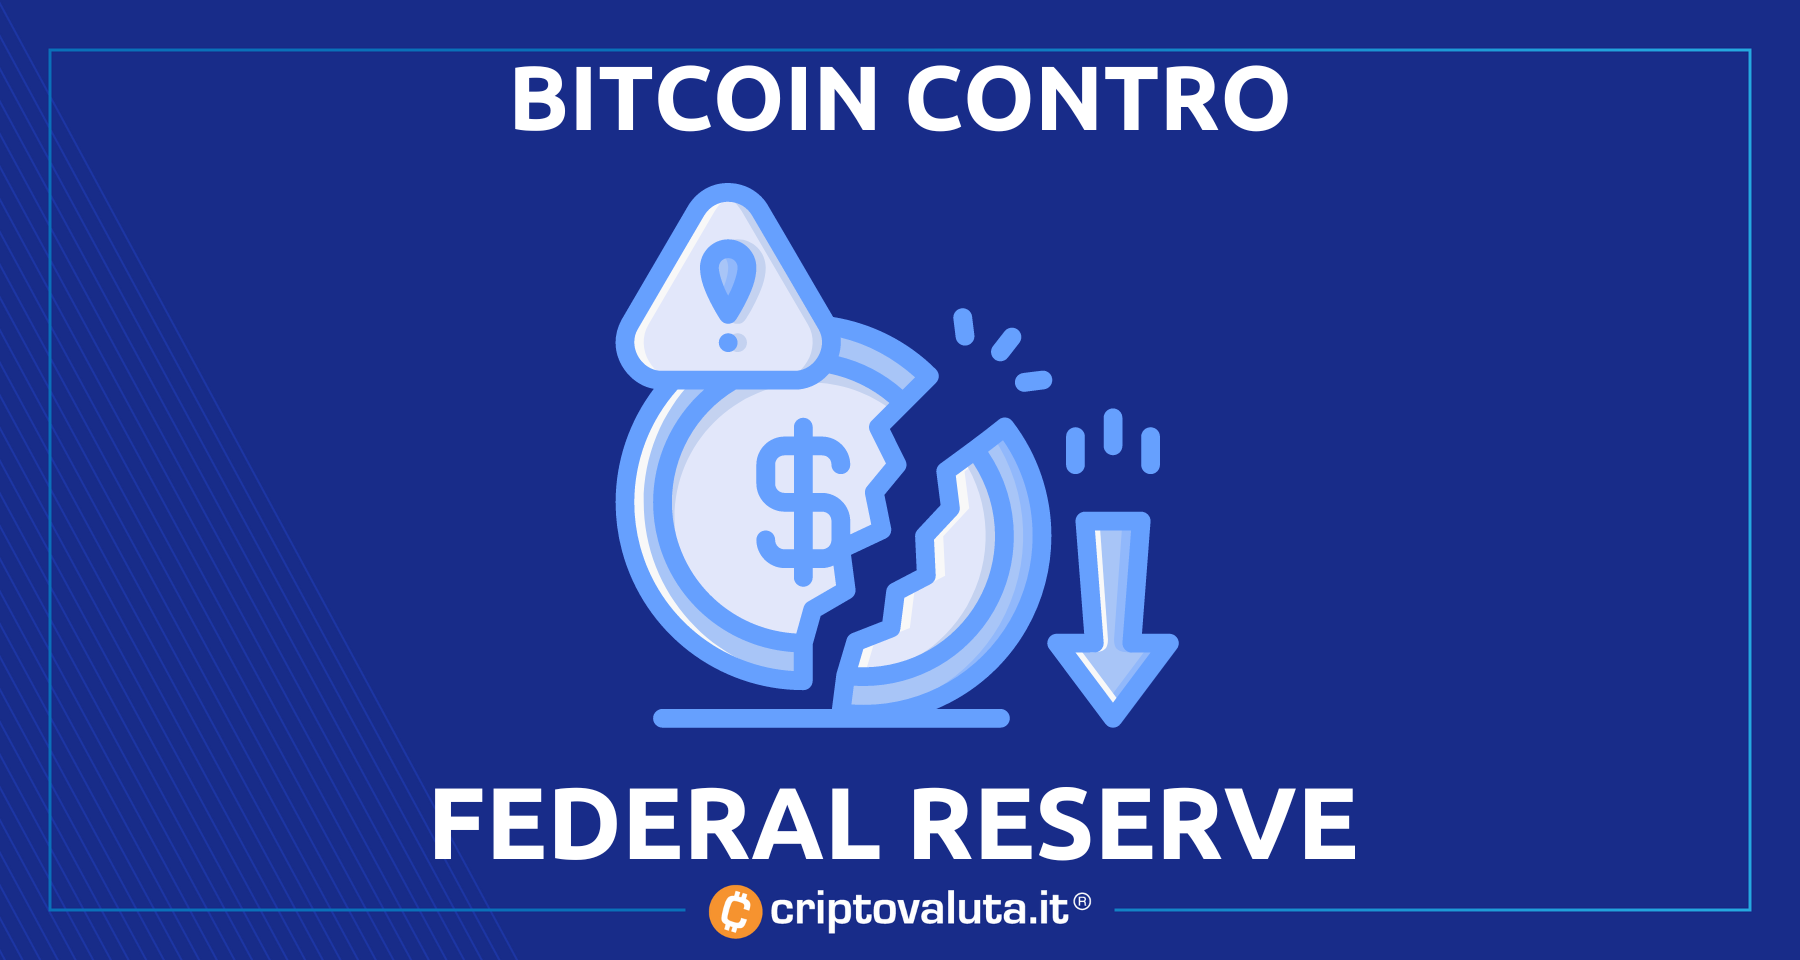 Bitcoin alla prova di Fed! | Le teorie dell’esperto economico dicono che…